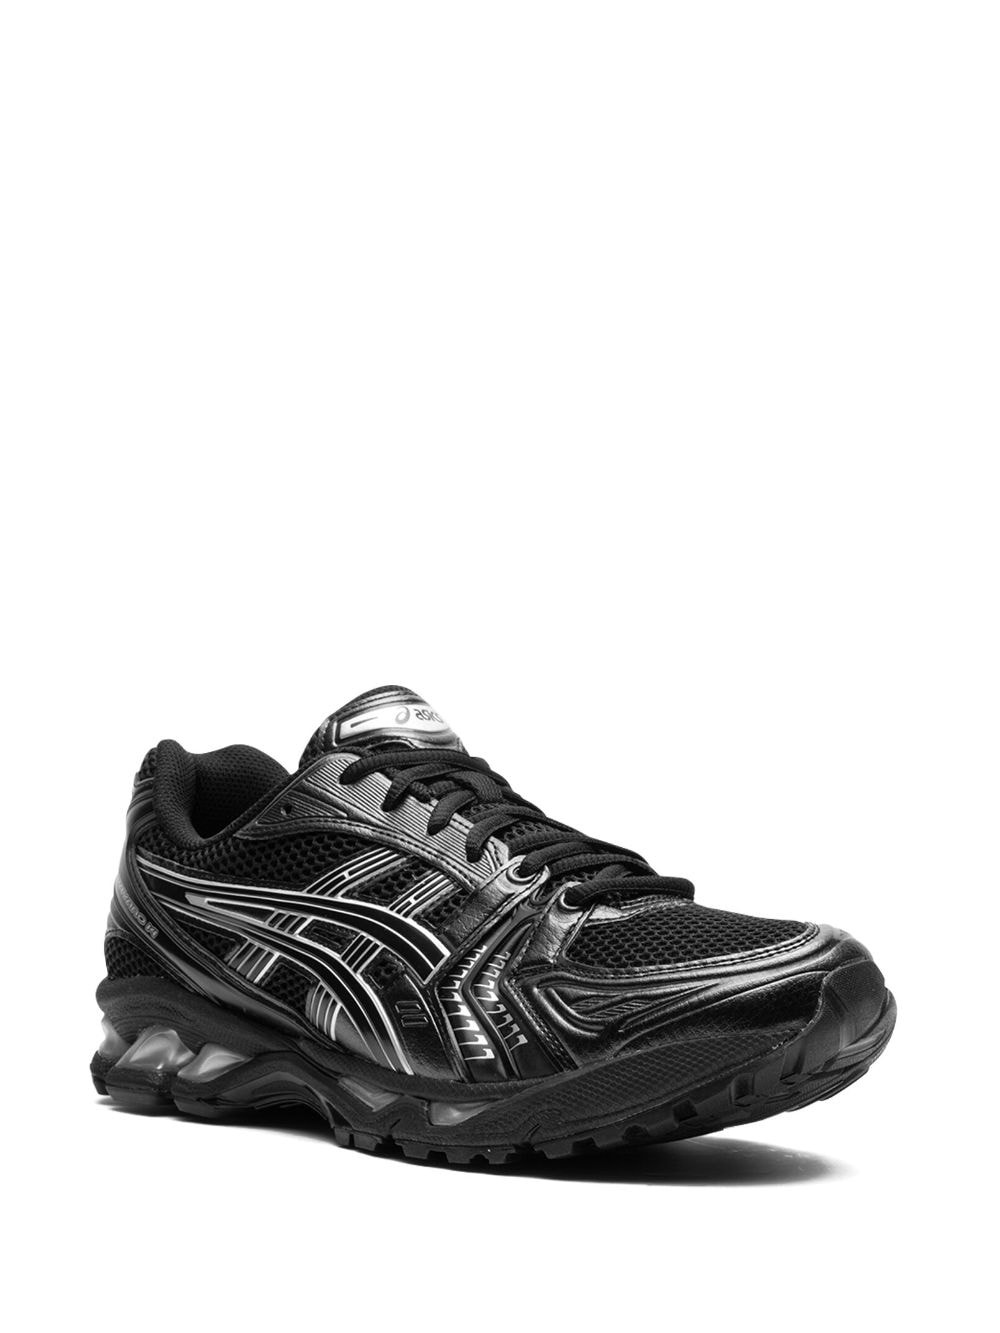 Gel-Kayano 14 "Black Pure Silver" sneakers - 2